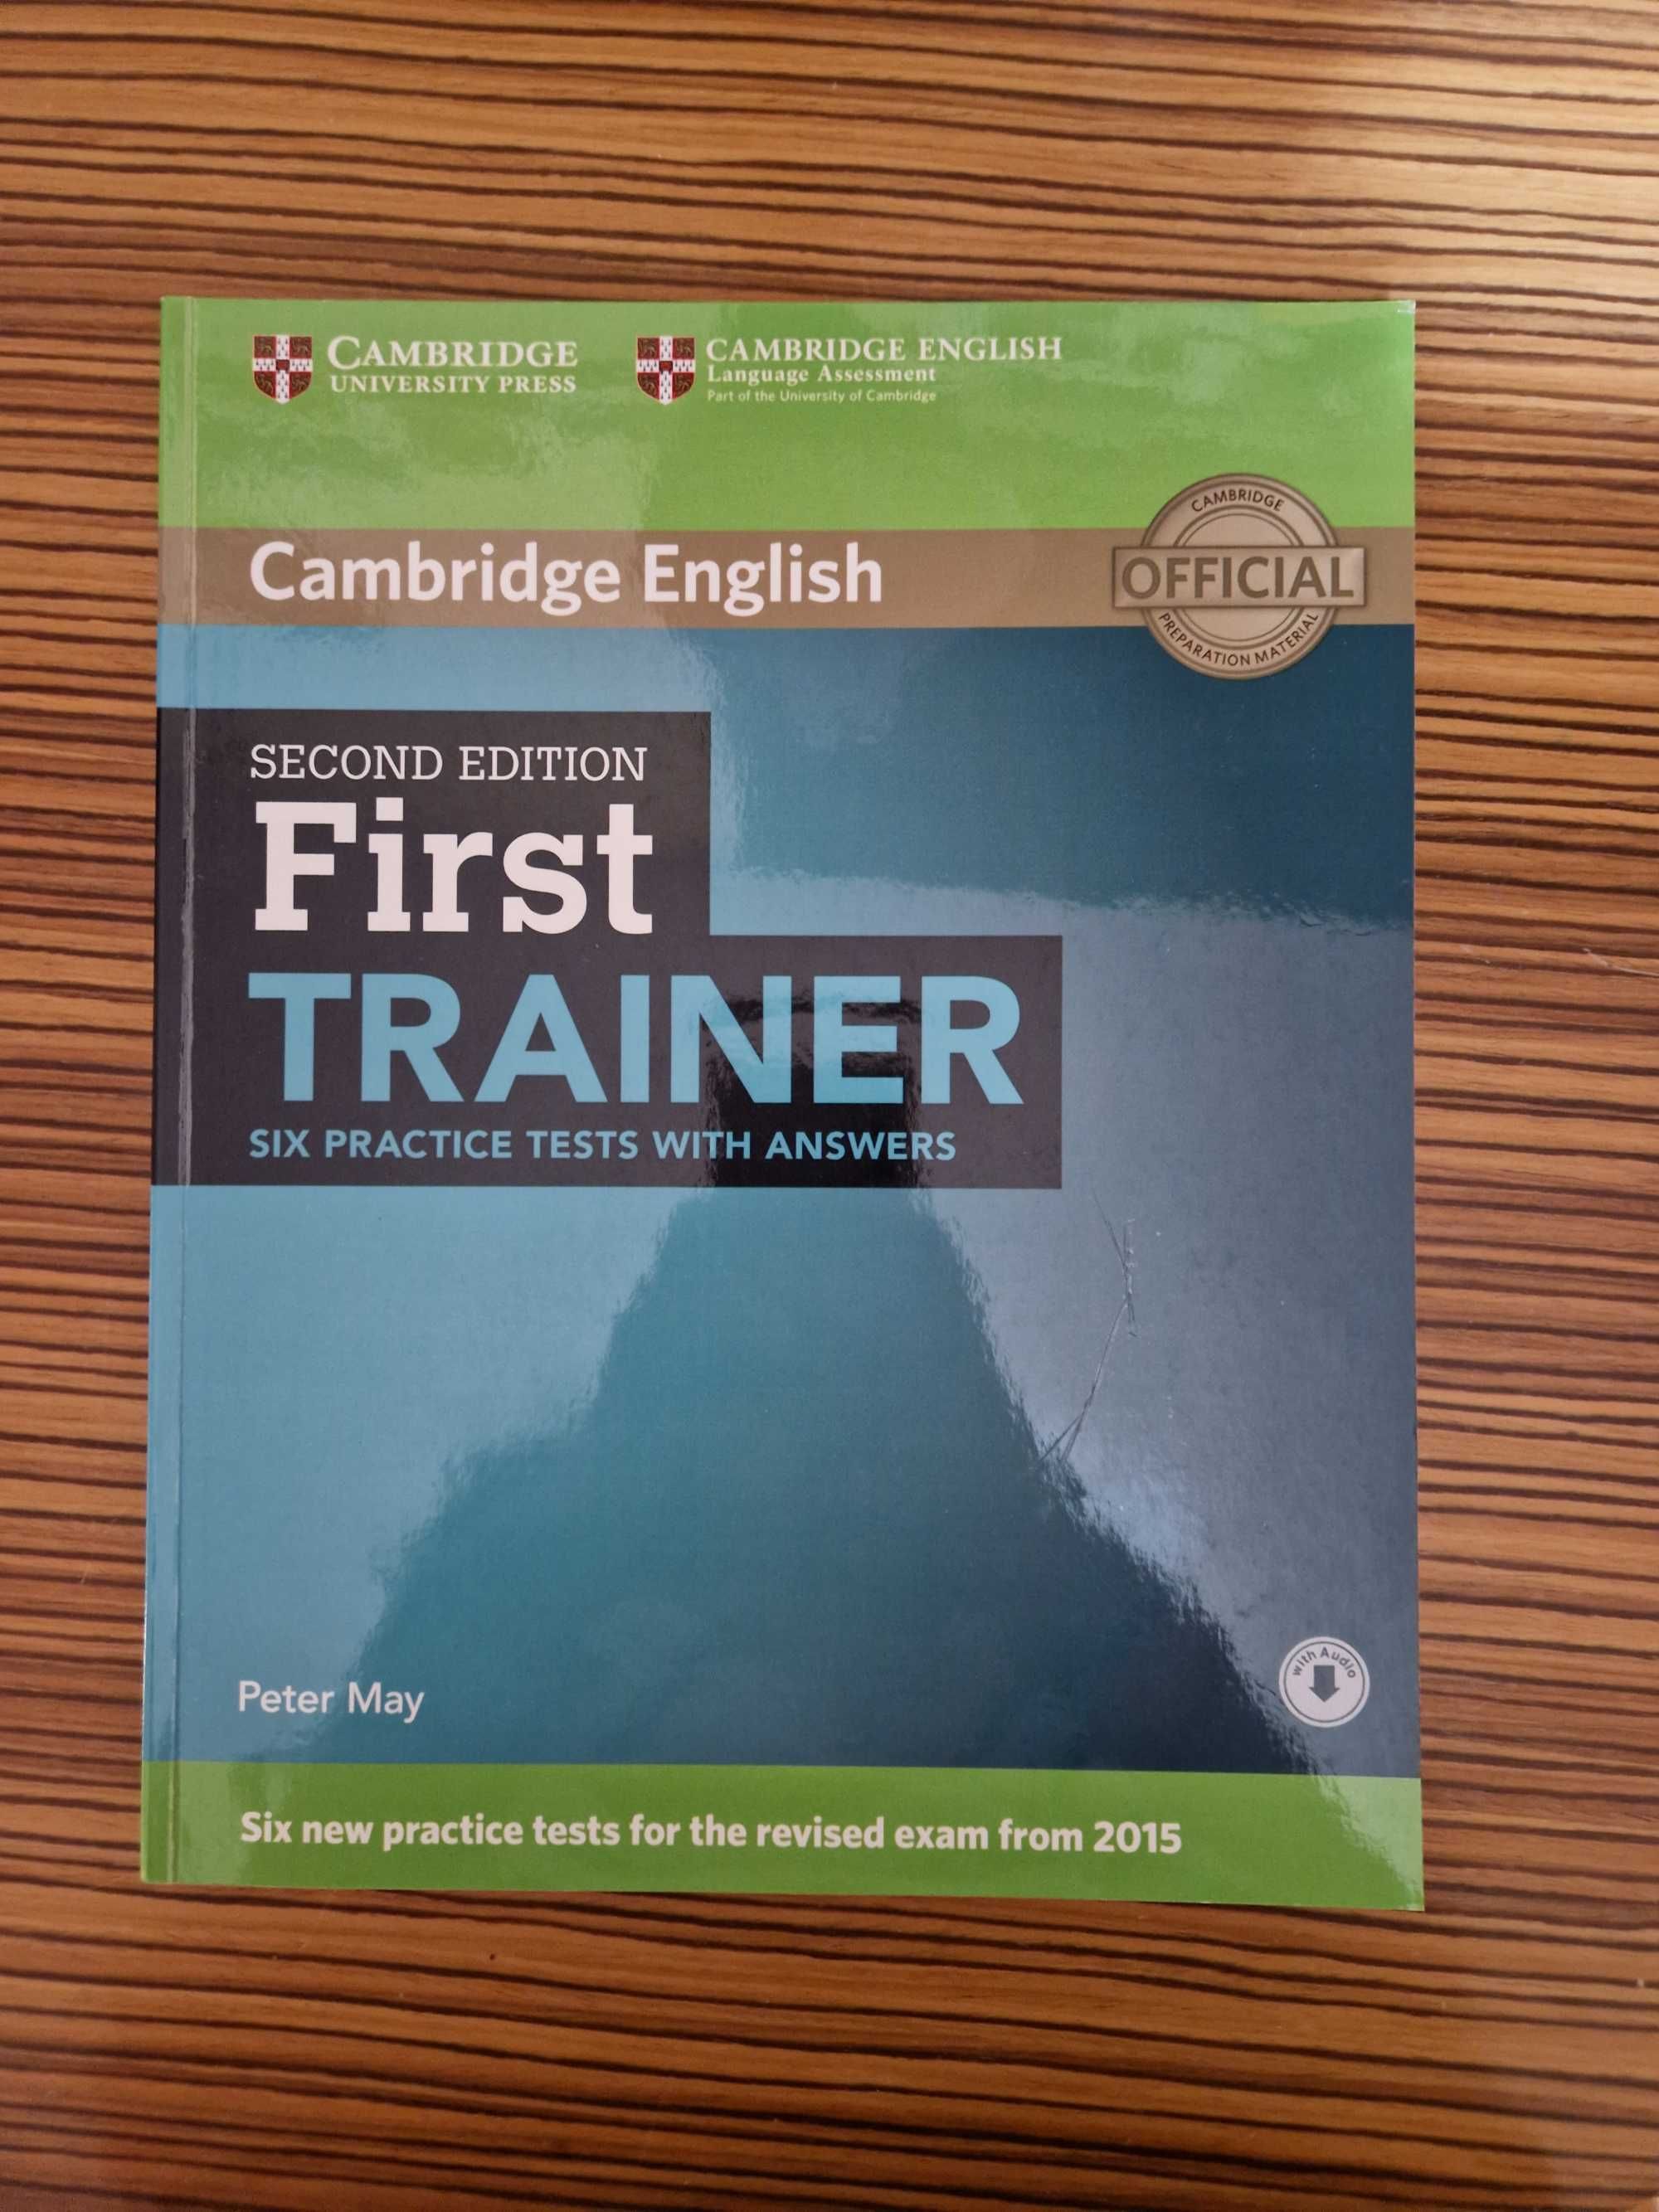 Livro de Apoio ao Exame "First" do Cambridge